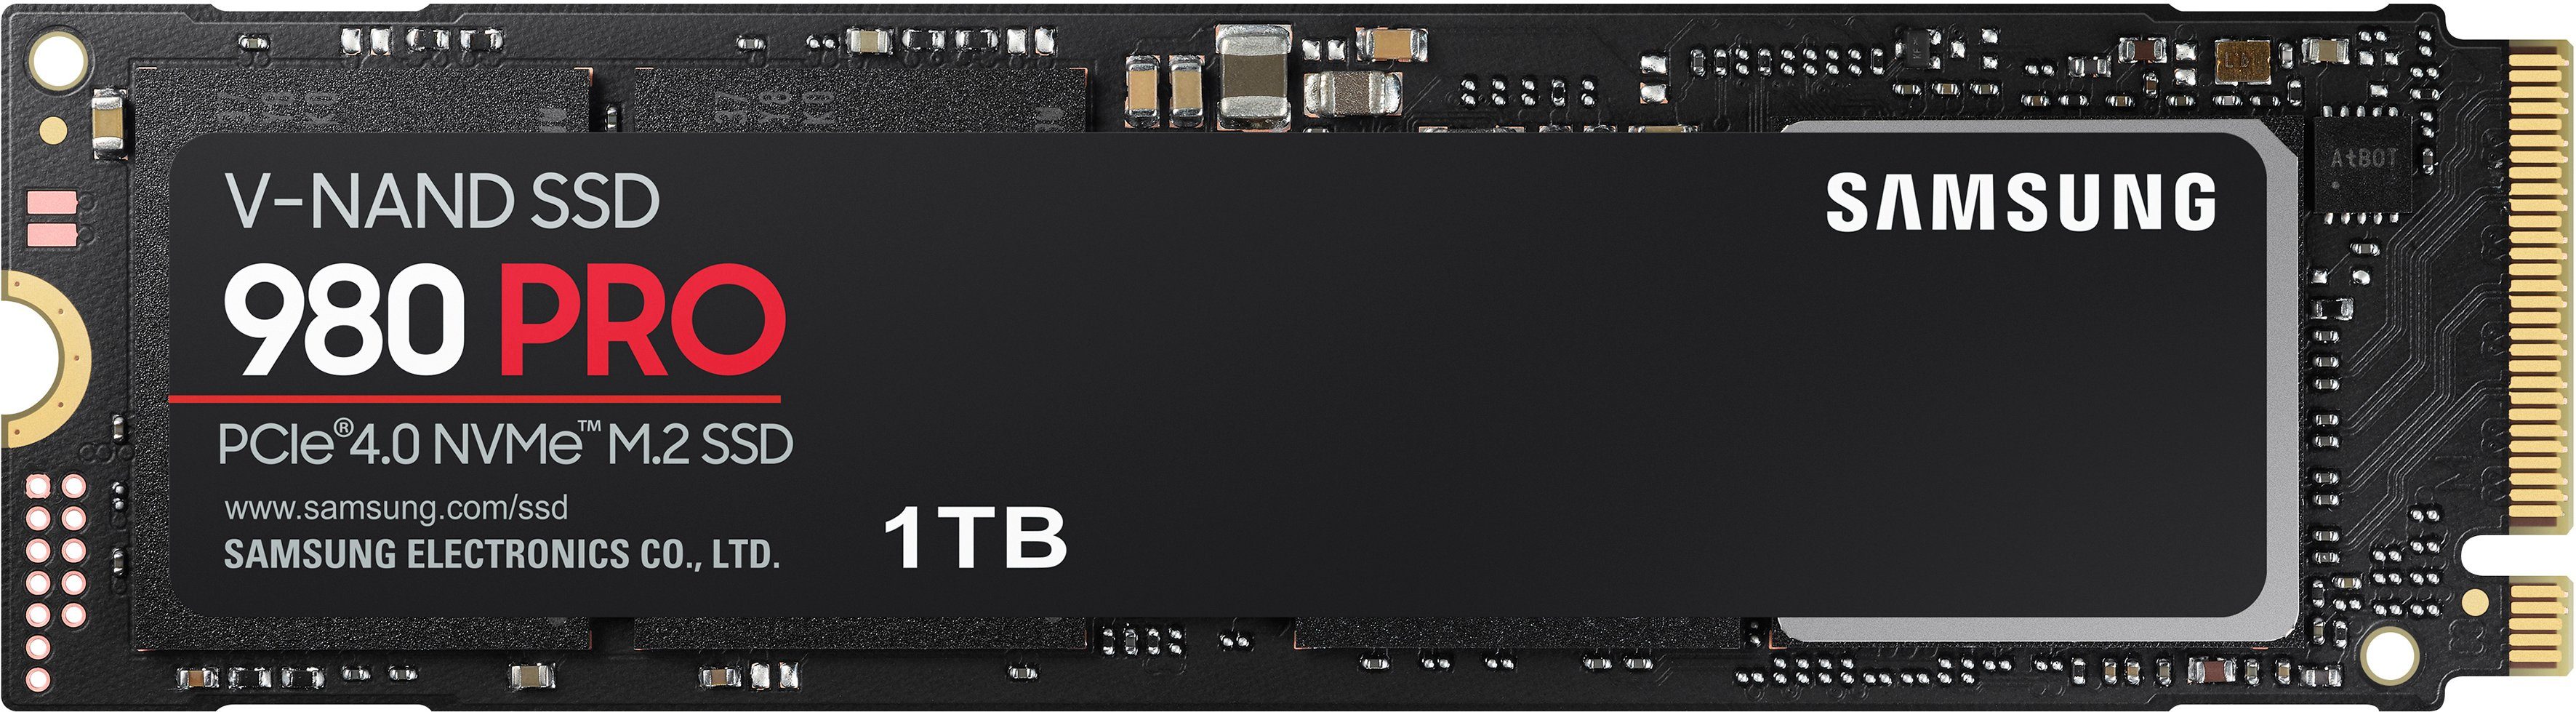 Samsung 980 PRO interne SSD (1 TB) 7000 MB/S Lesegeschwindigkeit, 5000 MB/S Schreibgeschwindigkeit, Playstation 5 kompatibel, PCIe® 4.0 NVMe™, M.2 | SSD-Festplatten